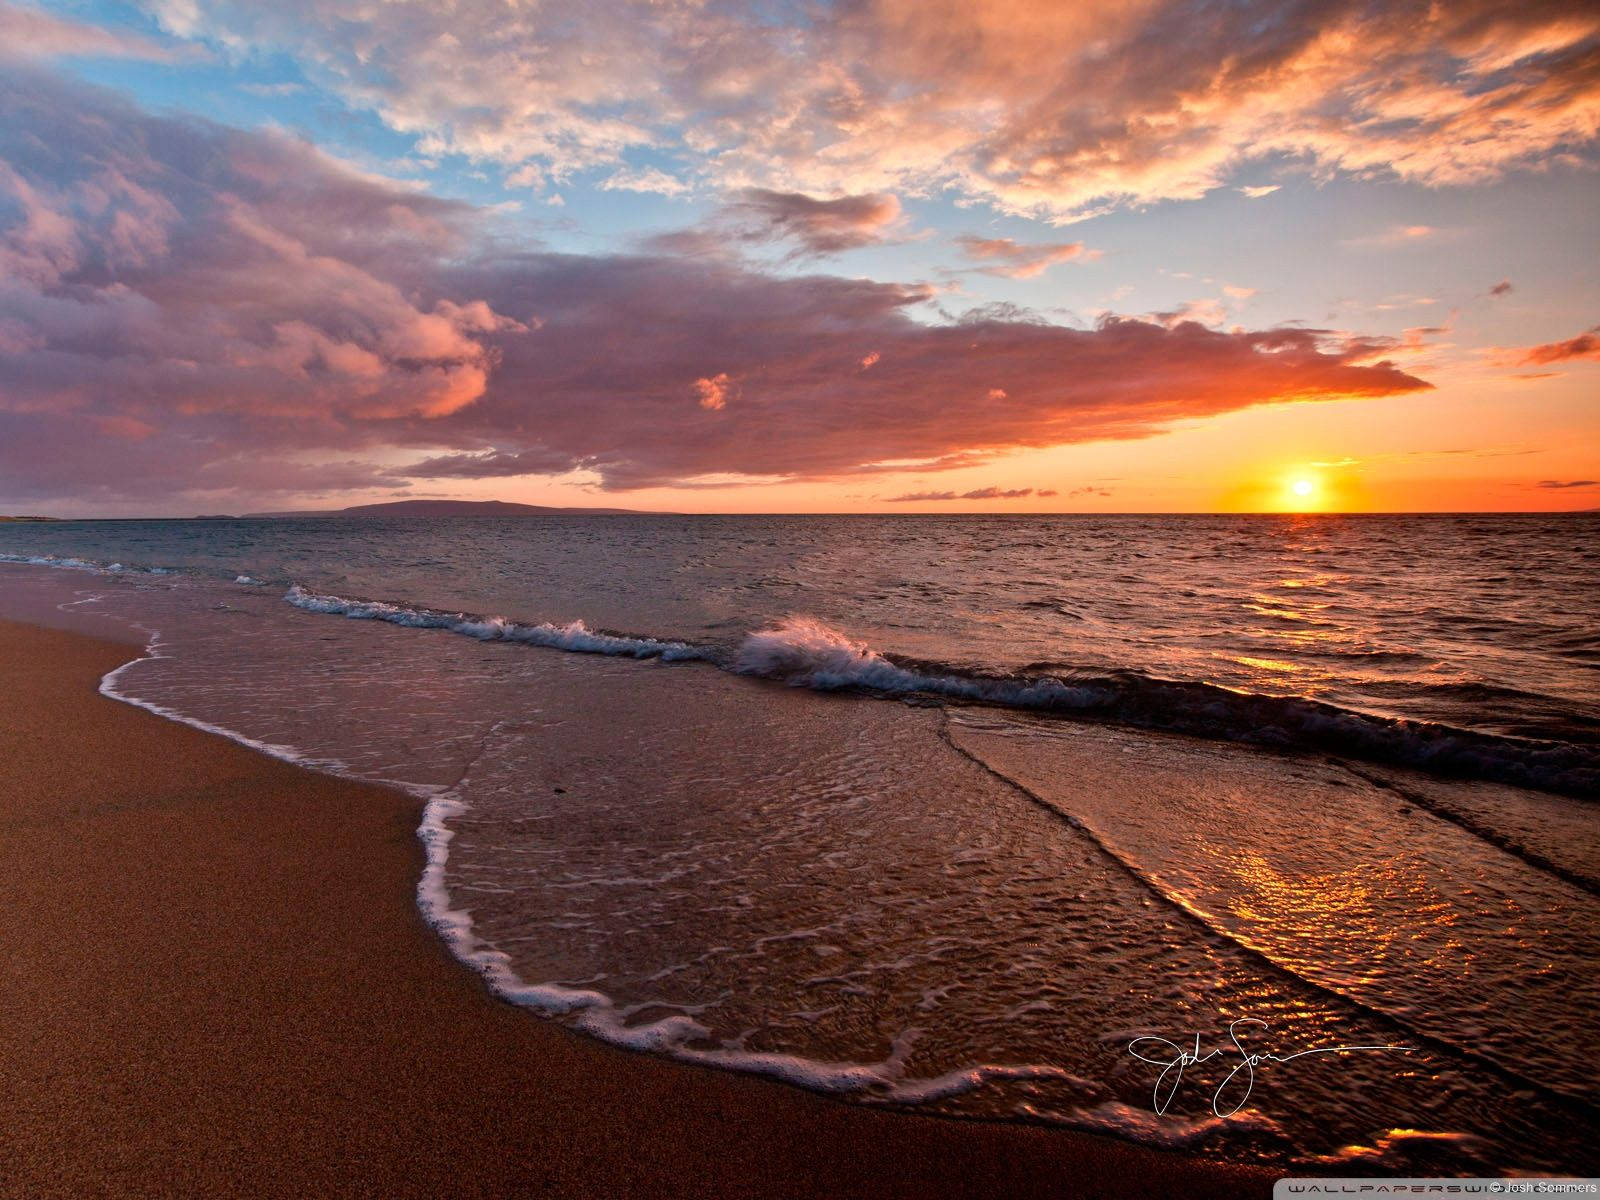 Download Sunset Beach Wallpaper 